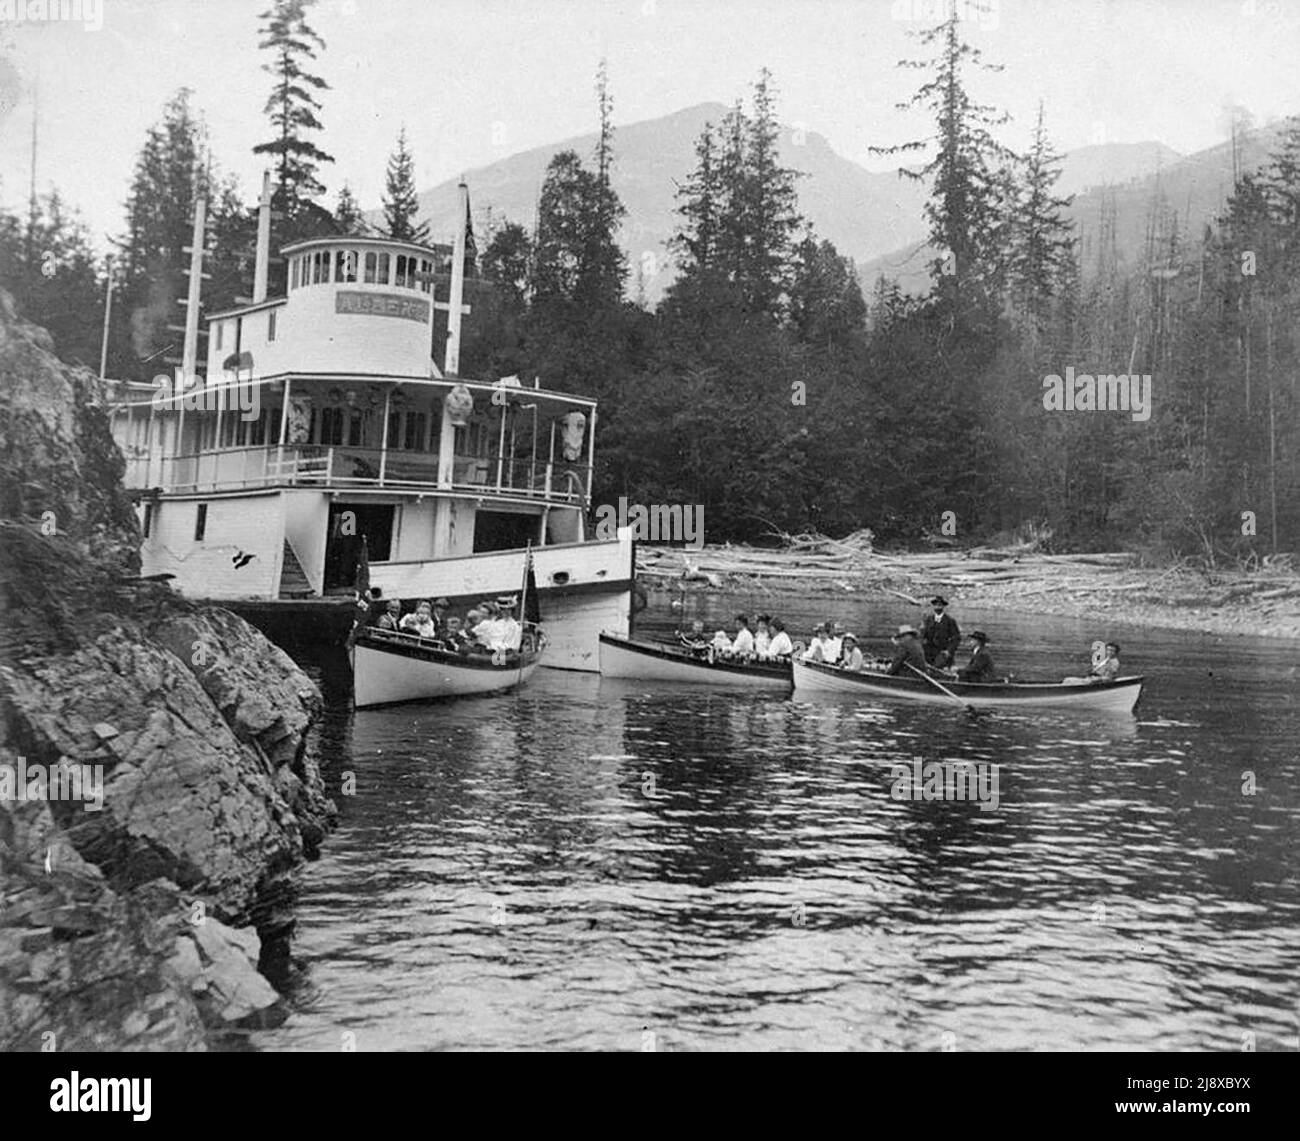 Hulk des Heckers Alberta, der von Maschinen befreit wurde, auf dem Kootenay See, entweder Kaslo oder Galena Bay, einige Zeit nach dem 1. März 1905. Hulk war zu einer Attraktion für Touristen in Ruderbooten in der Umgebung von ca. 1905 Stockfoto